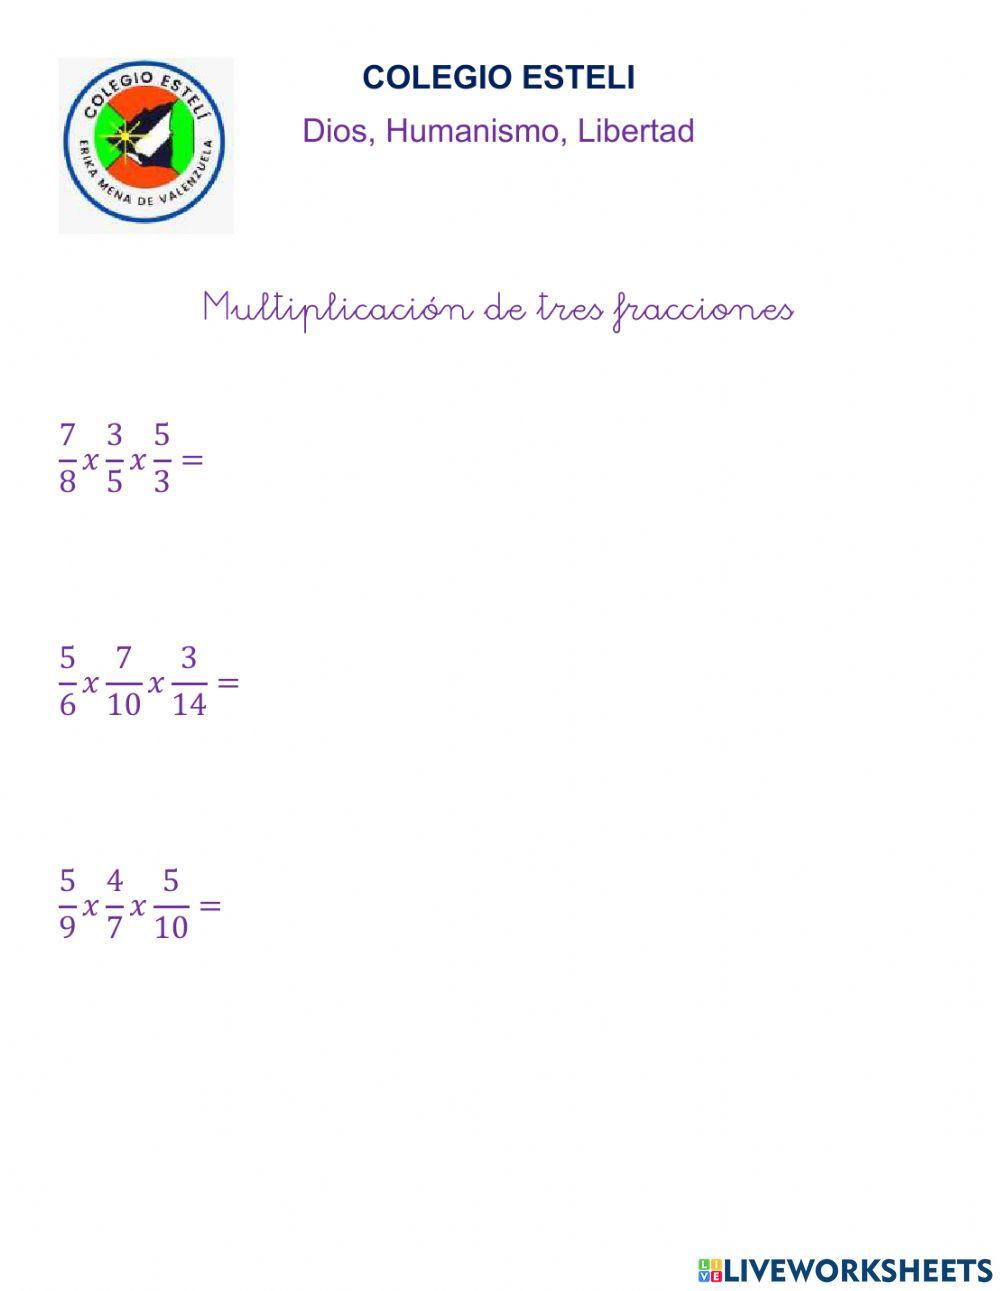 Multiplicacion de tres fracciones